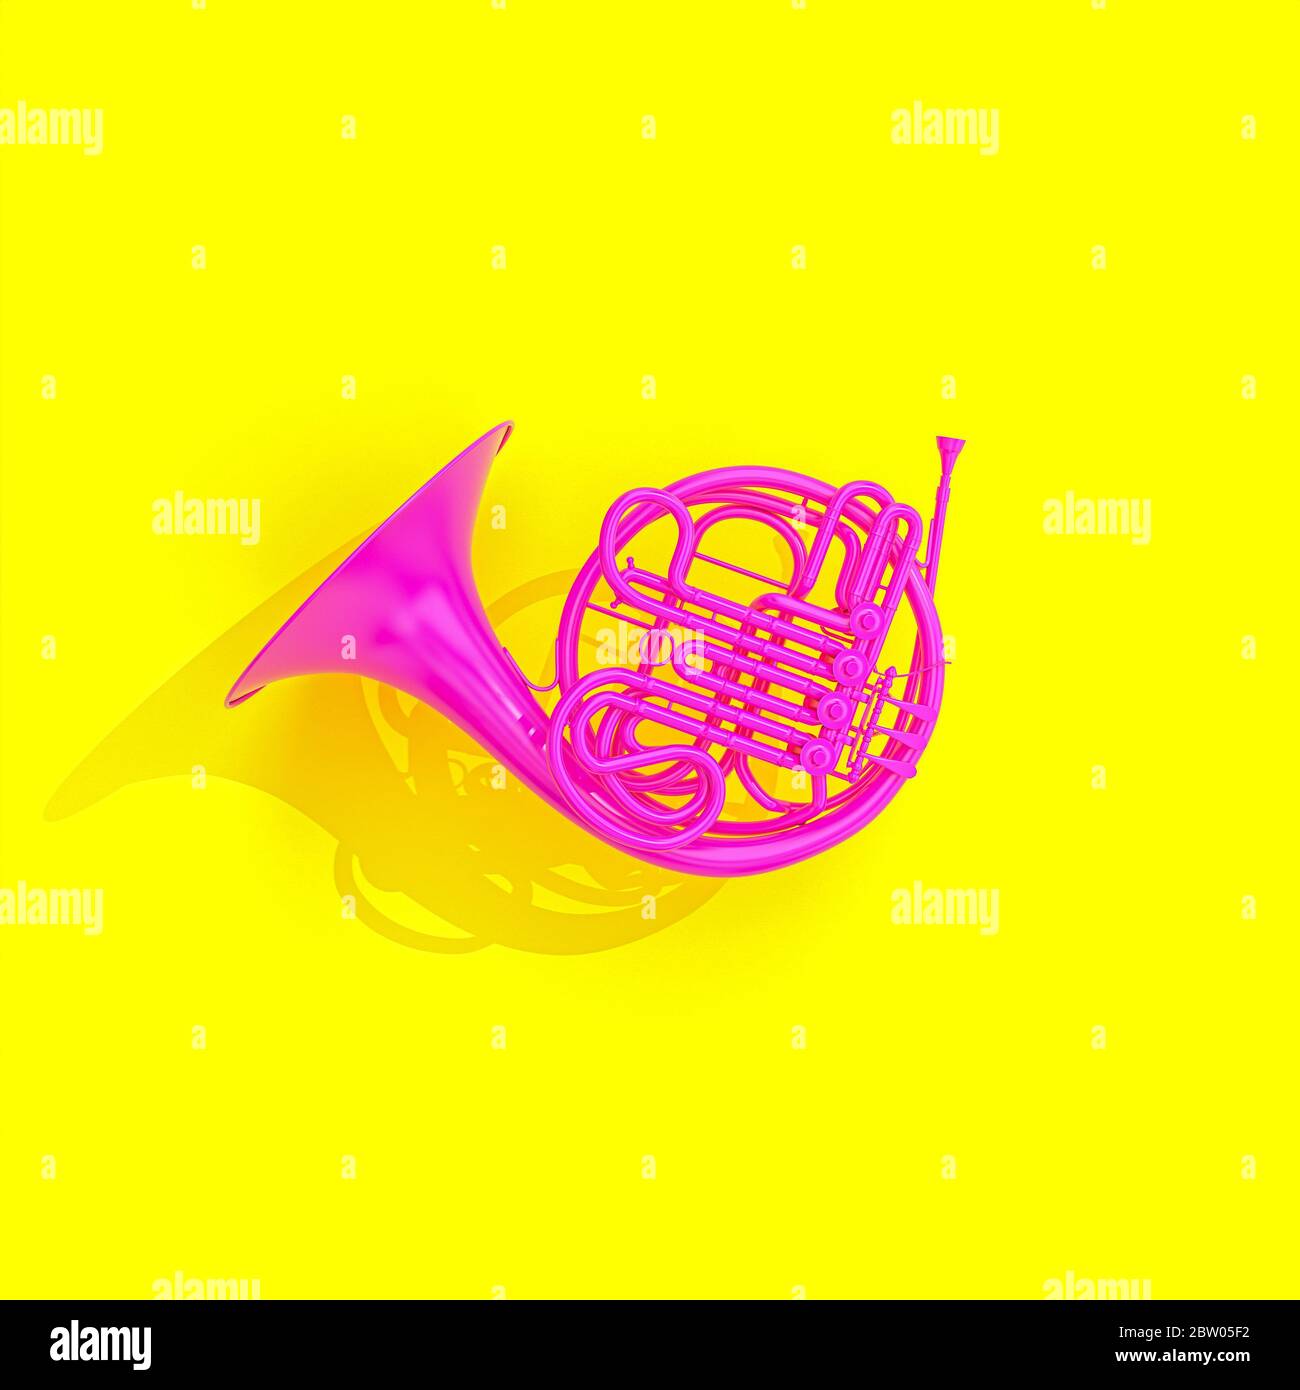 Fuchsia corne française sur fond jaune, style de pose plate. Personne autour du rendu 3d. Concept de musique. Banque D'Images